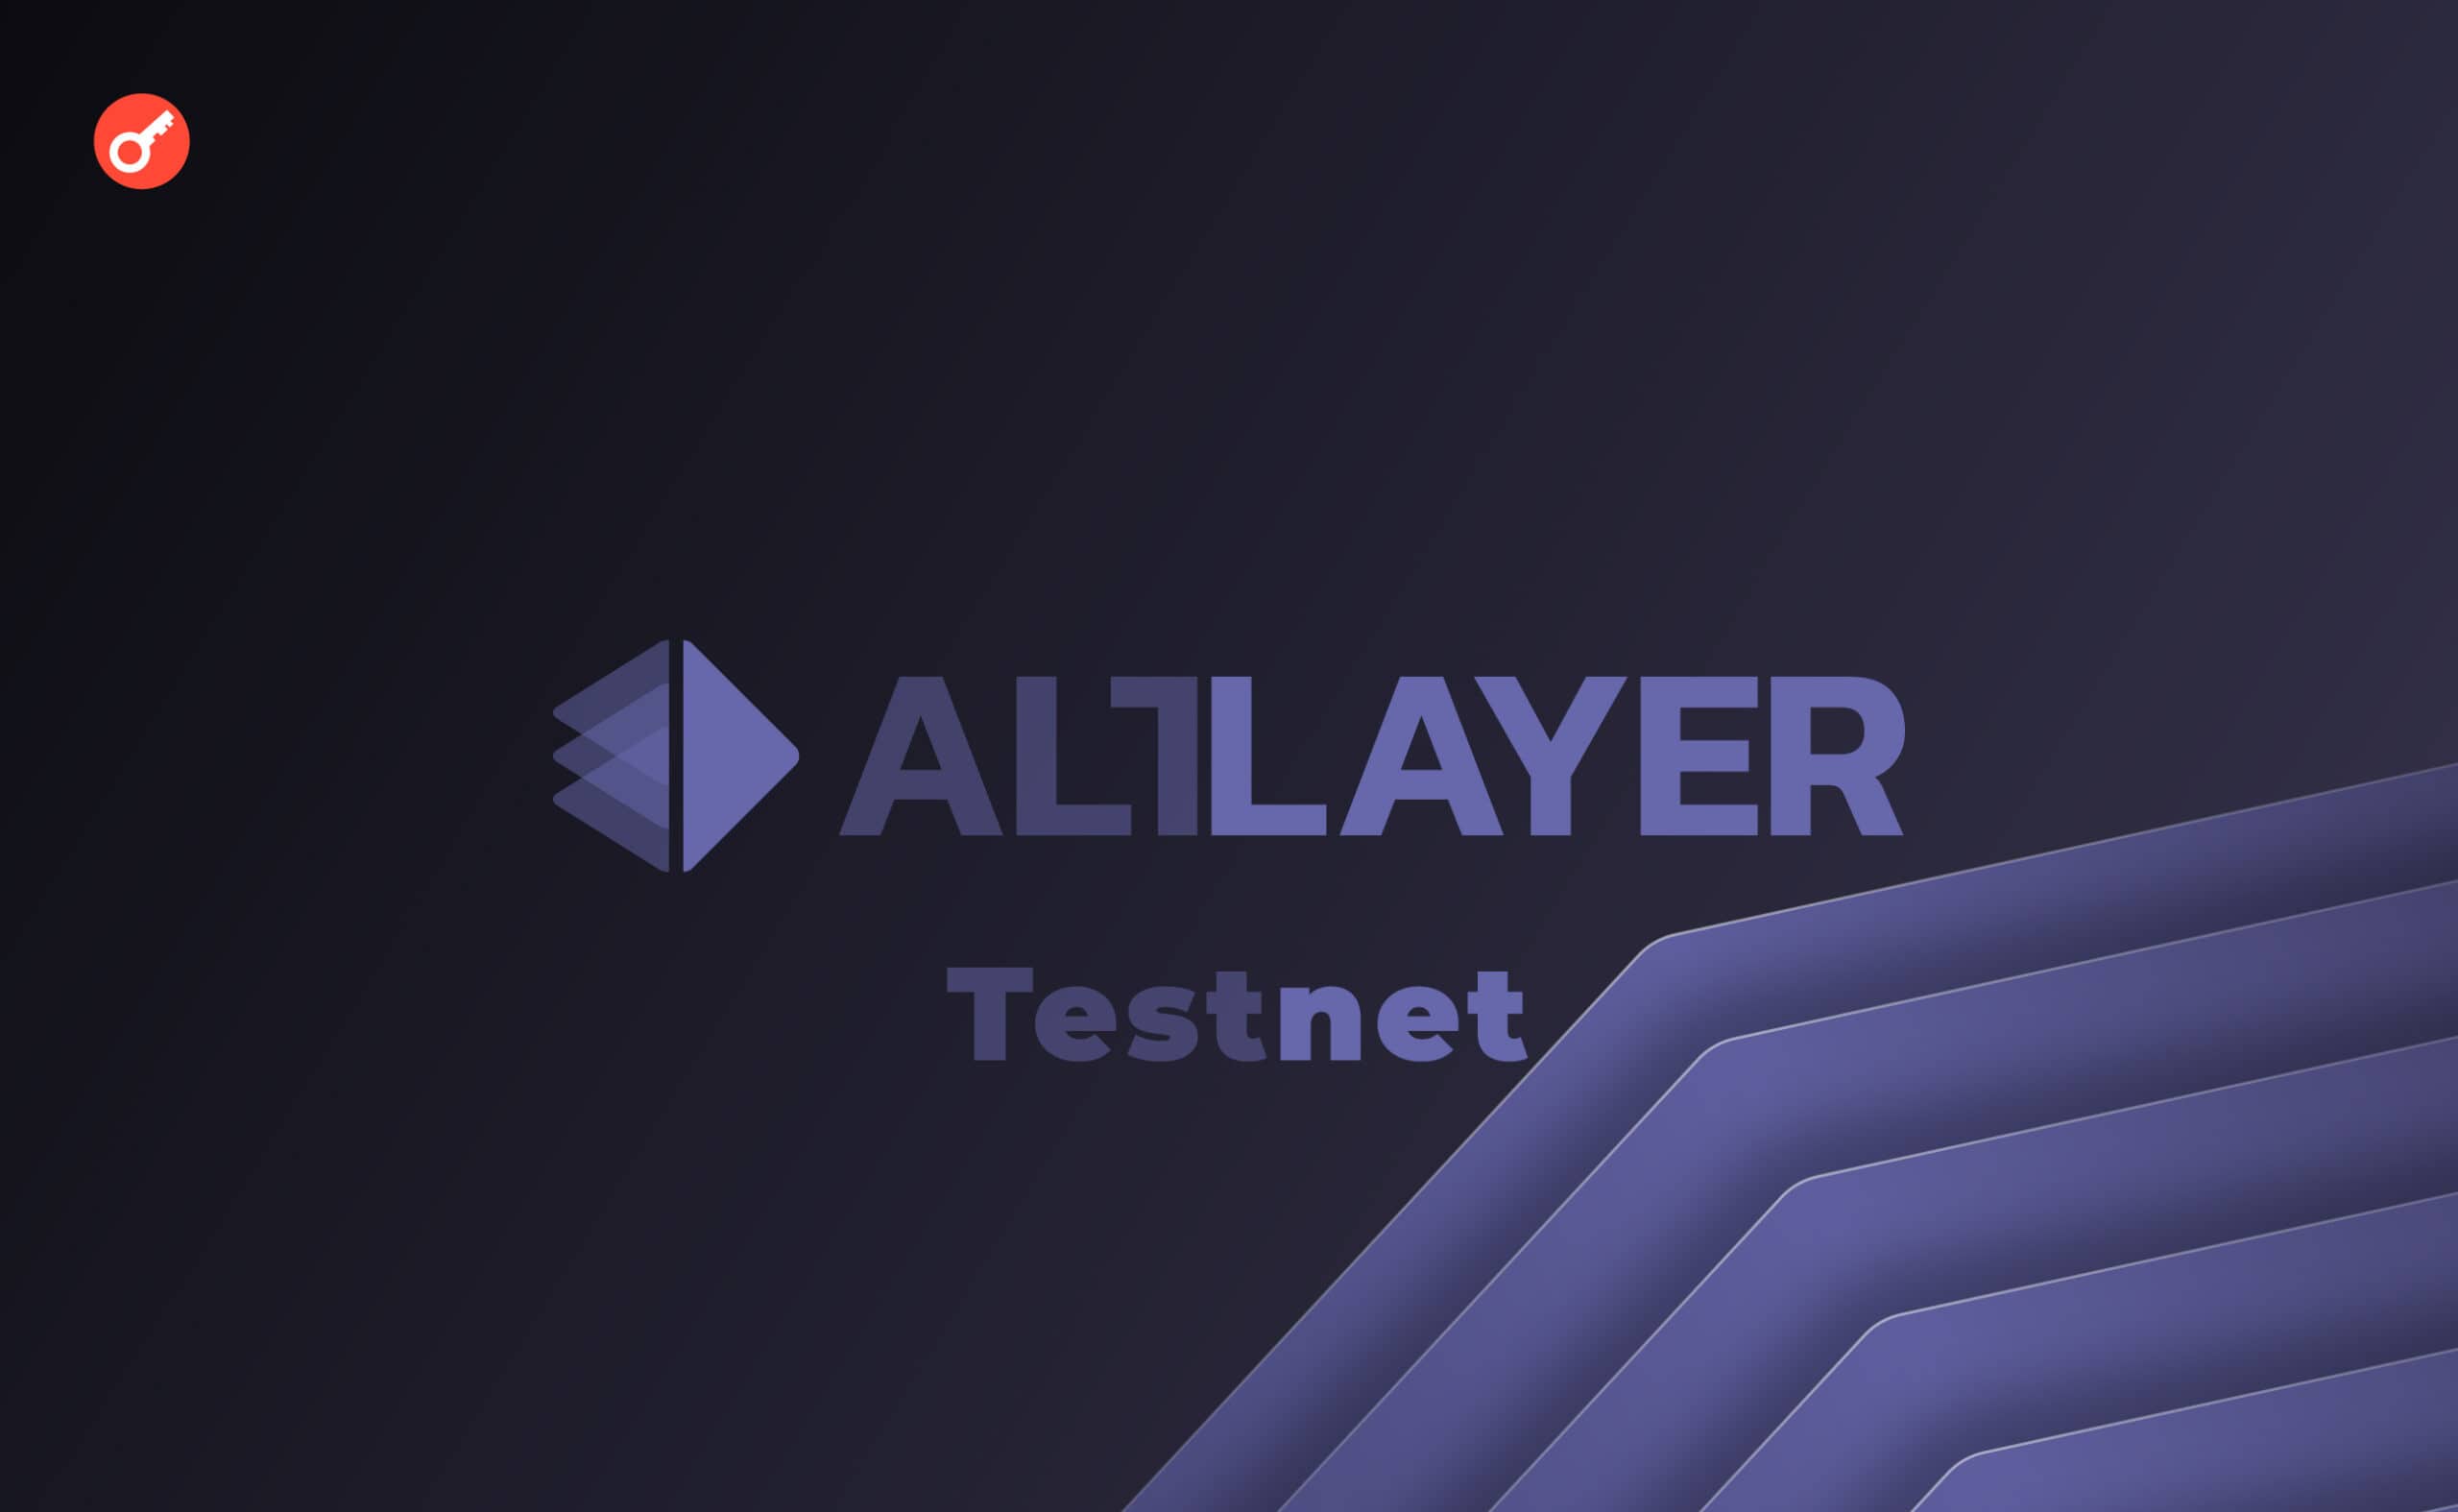 AltLayer: Проходим тестнет и получаем OAT на Galxe. Заглавный коллаж статьи.